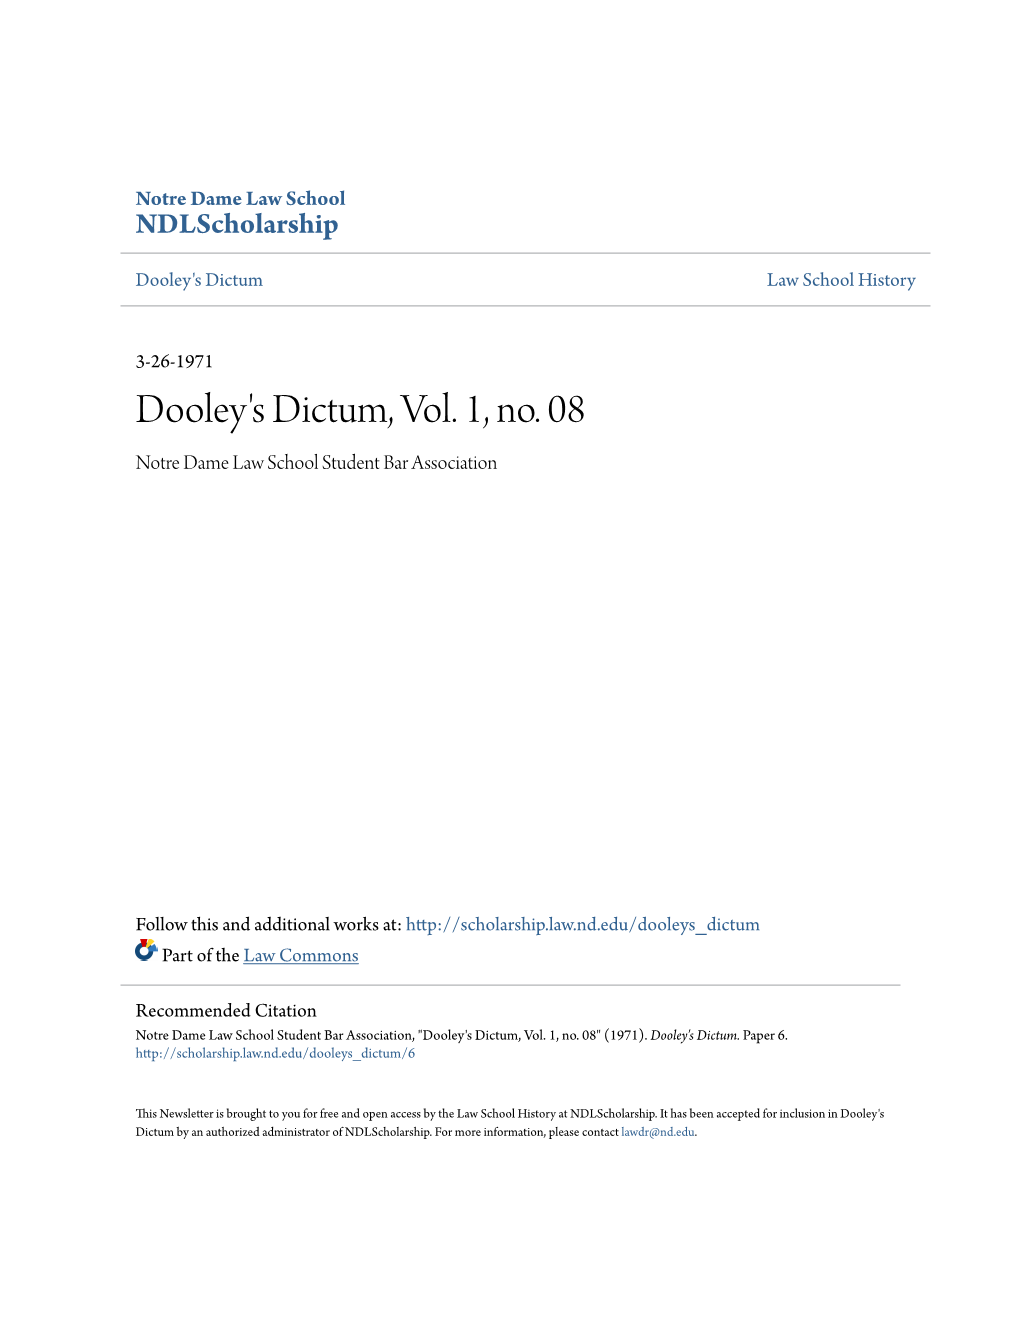 Dooley's Dictum, Vol. 1, No. 08 Notre Dame Law School Student Bar Association